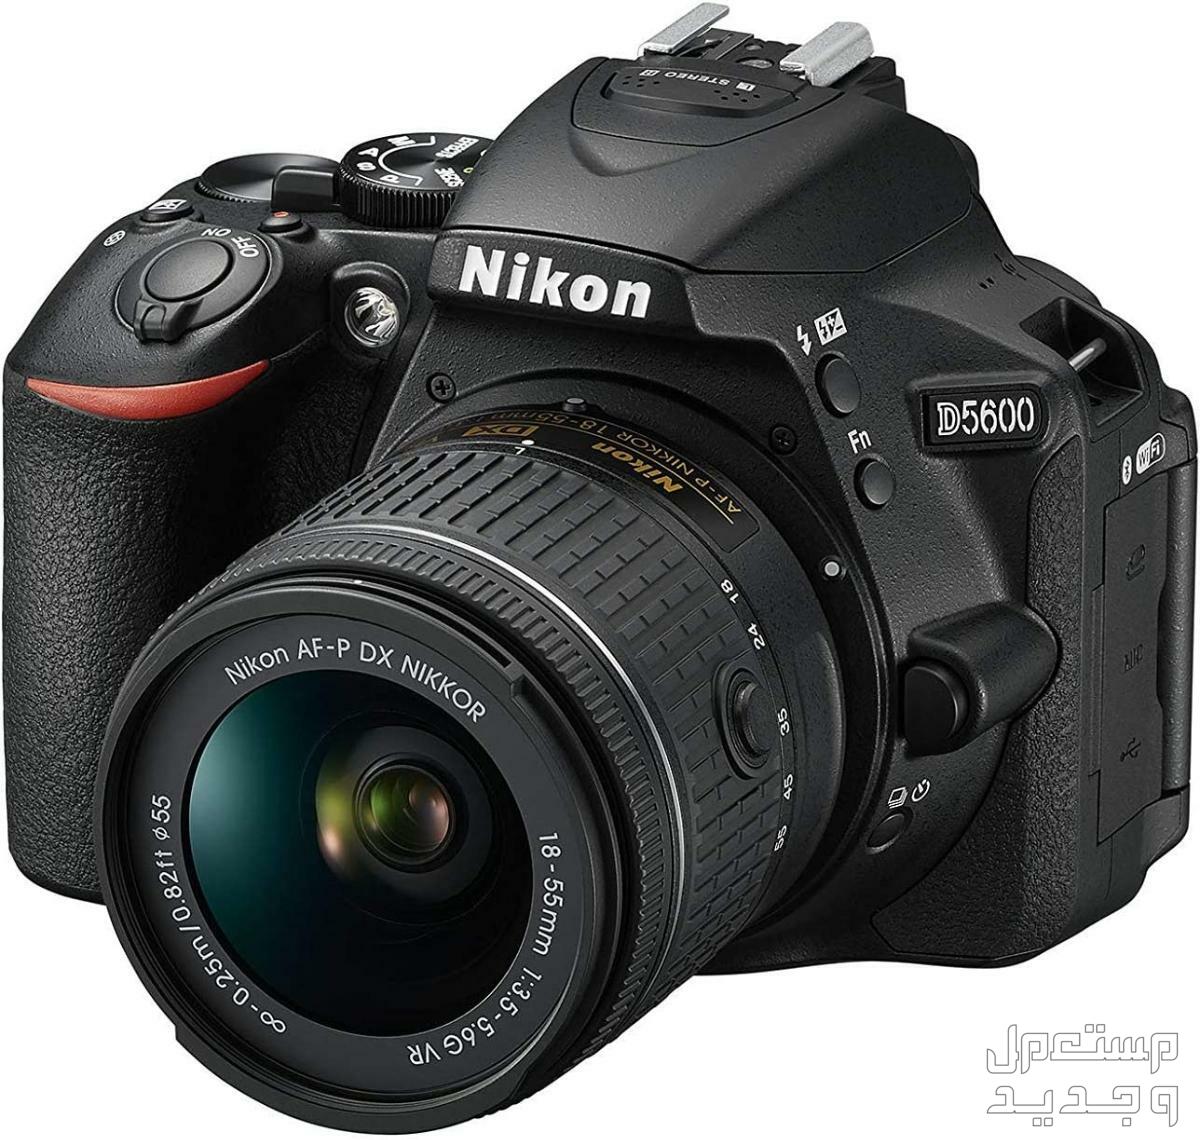 10 كاميرات تصوير ماركات عالمية بأسعار رخيصة في الجزائر كاميرا Nikon D5600